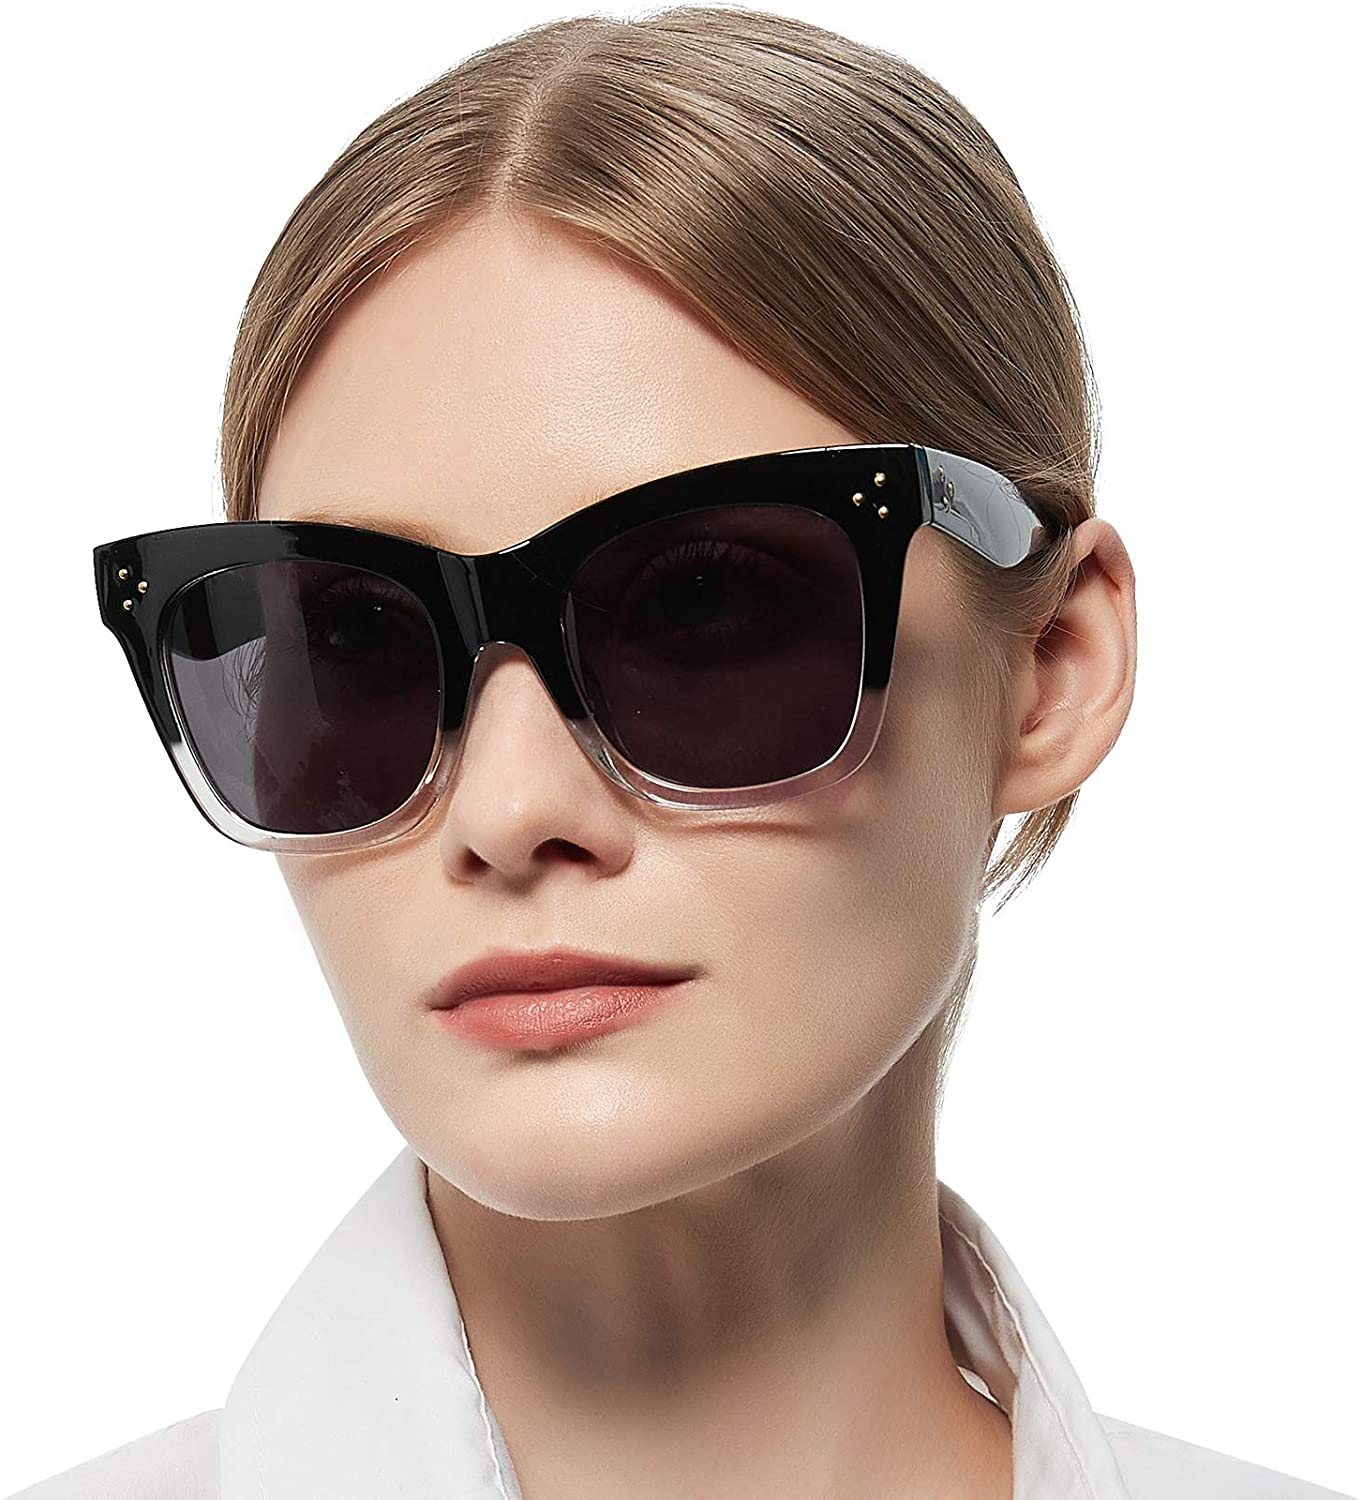 OCCI CHIARI Oversized Reader Sunglasses for Women Reading Sunglasses